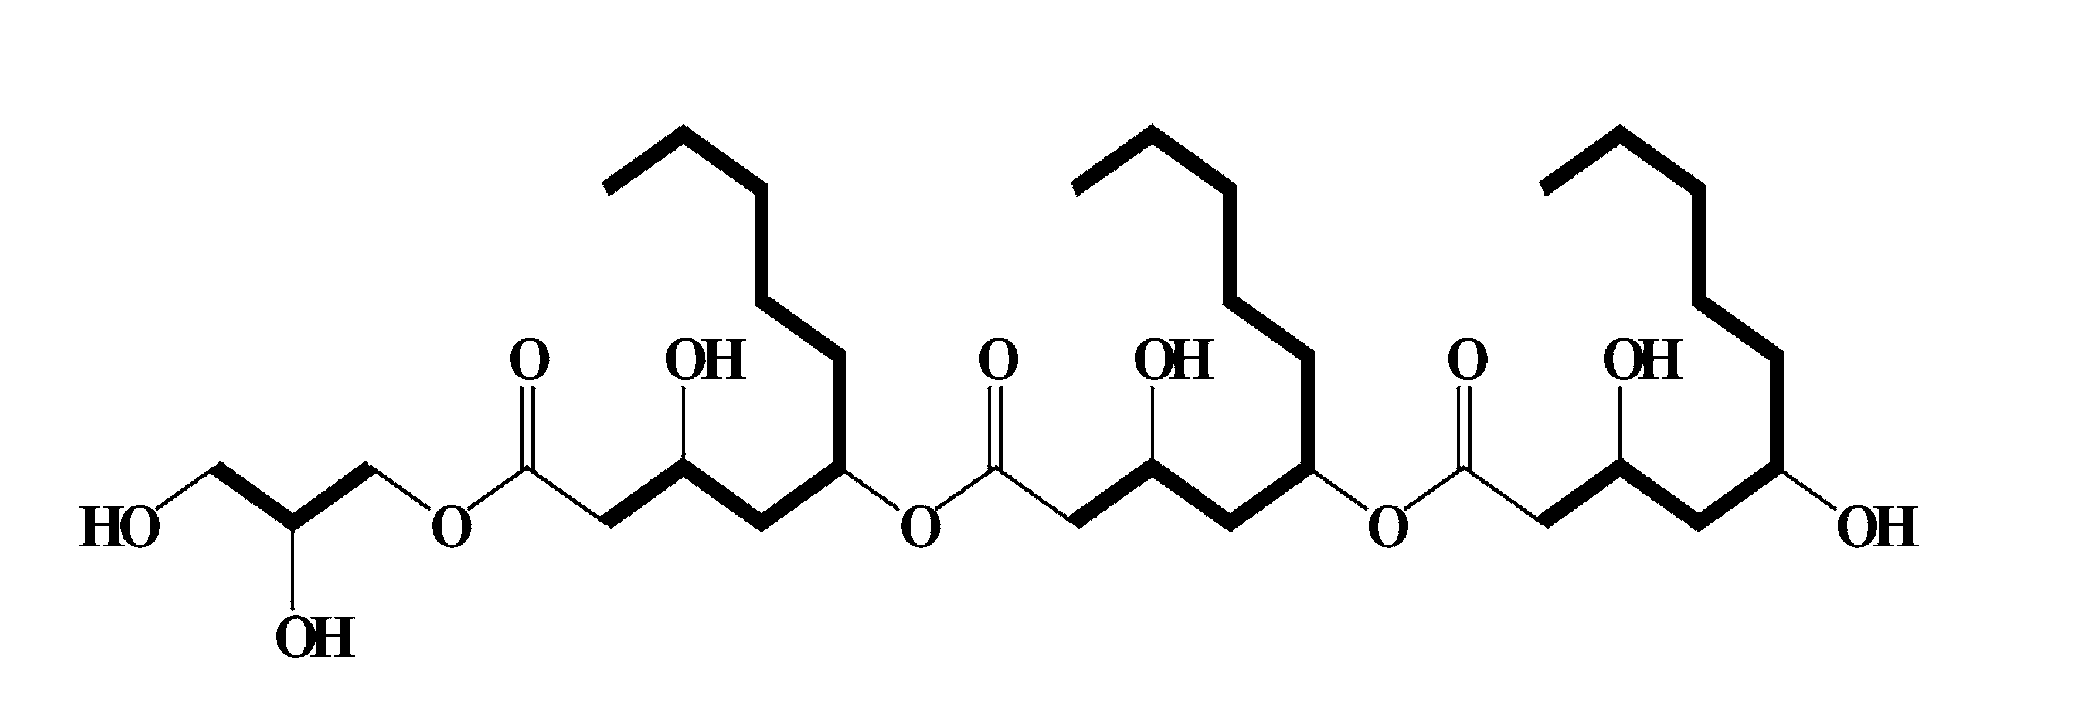 Novel biosurfactant produced by aureobasidium pullulans